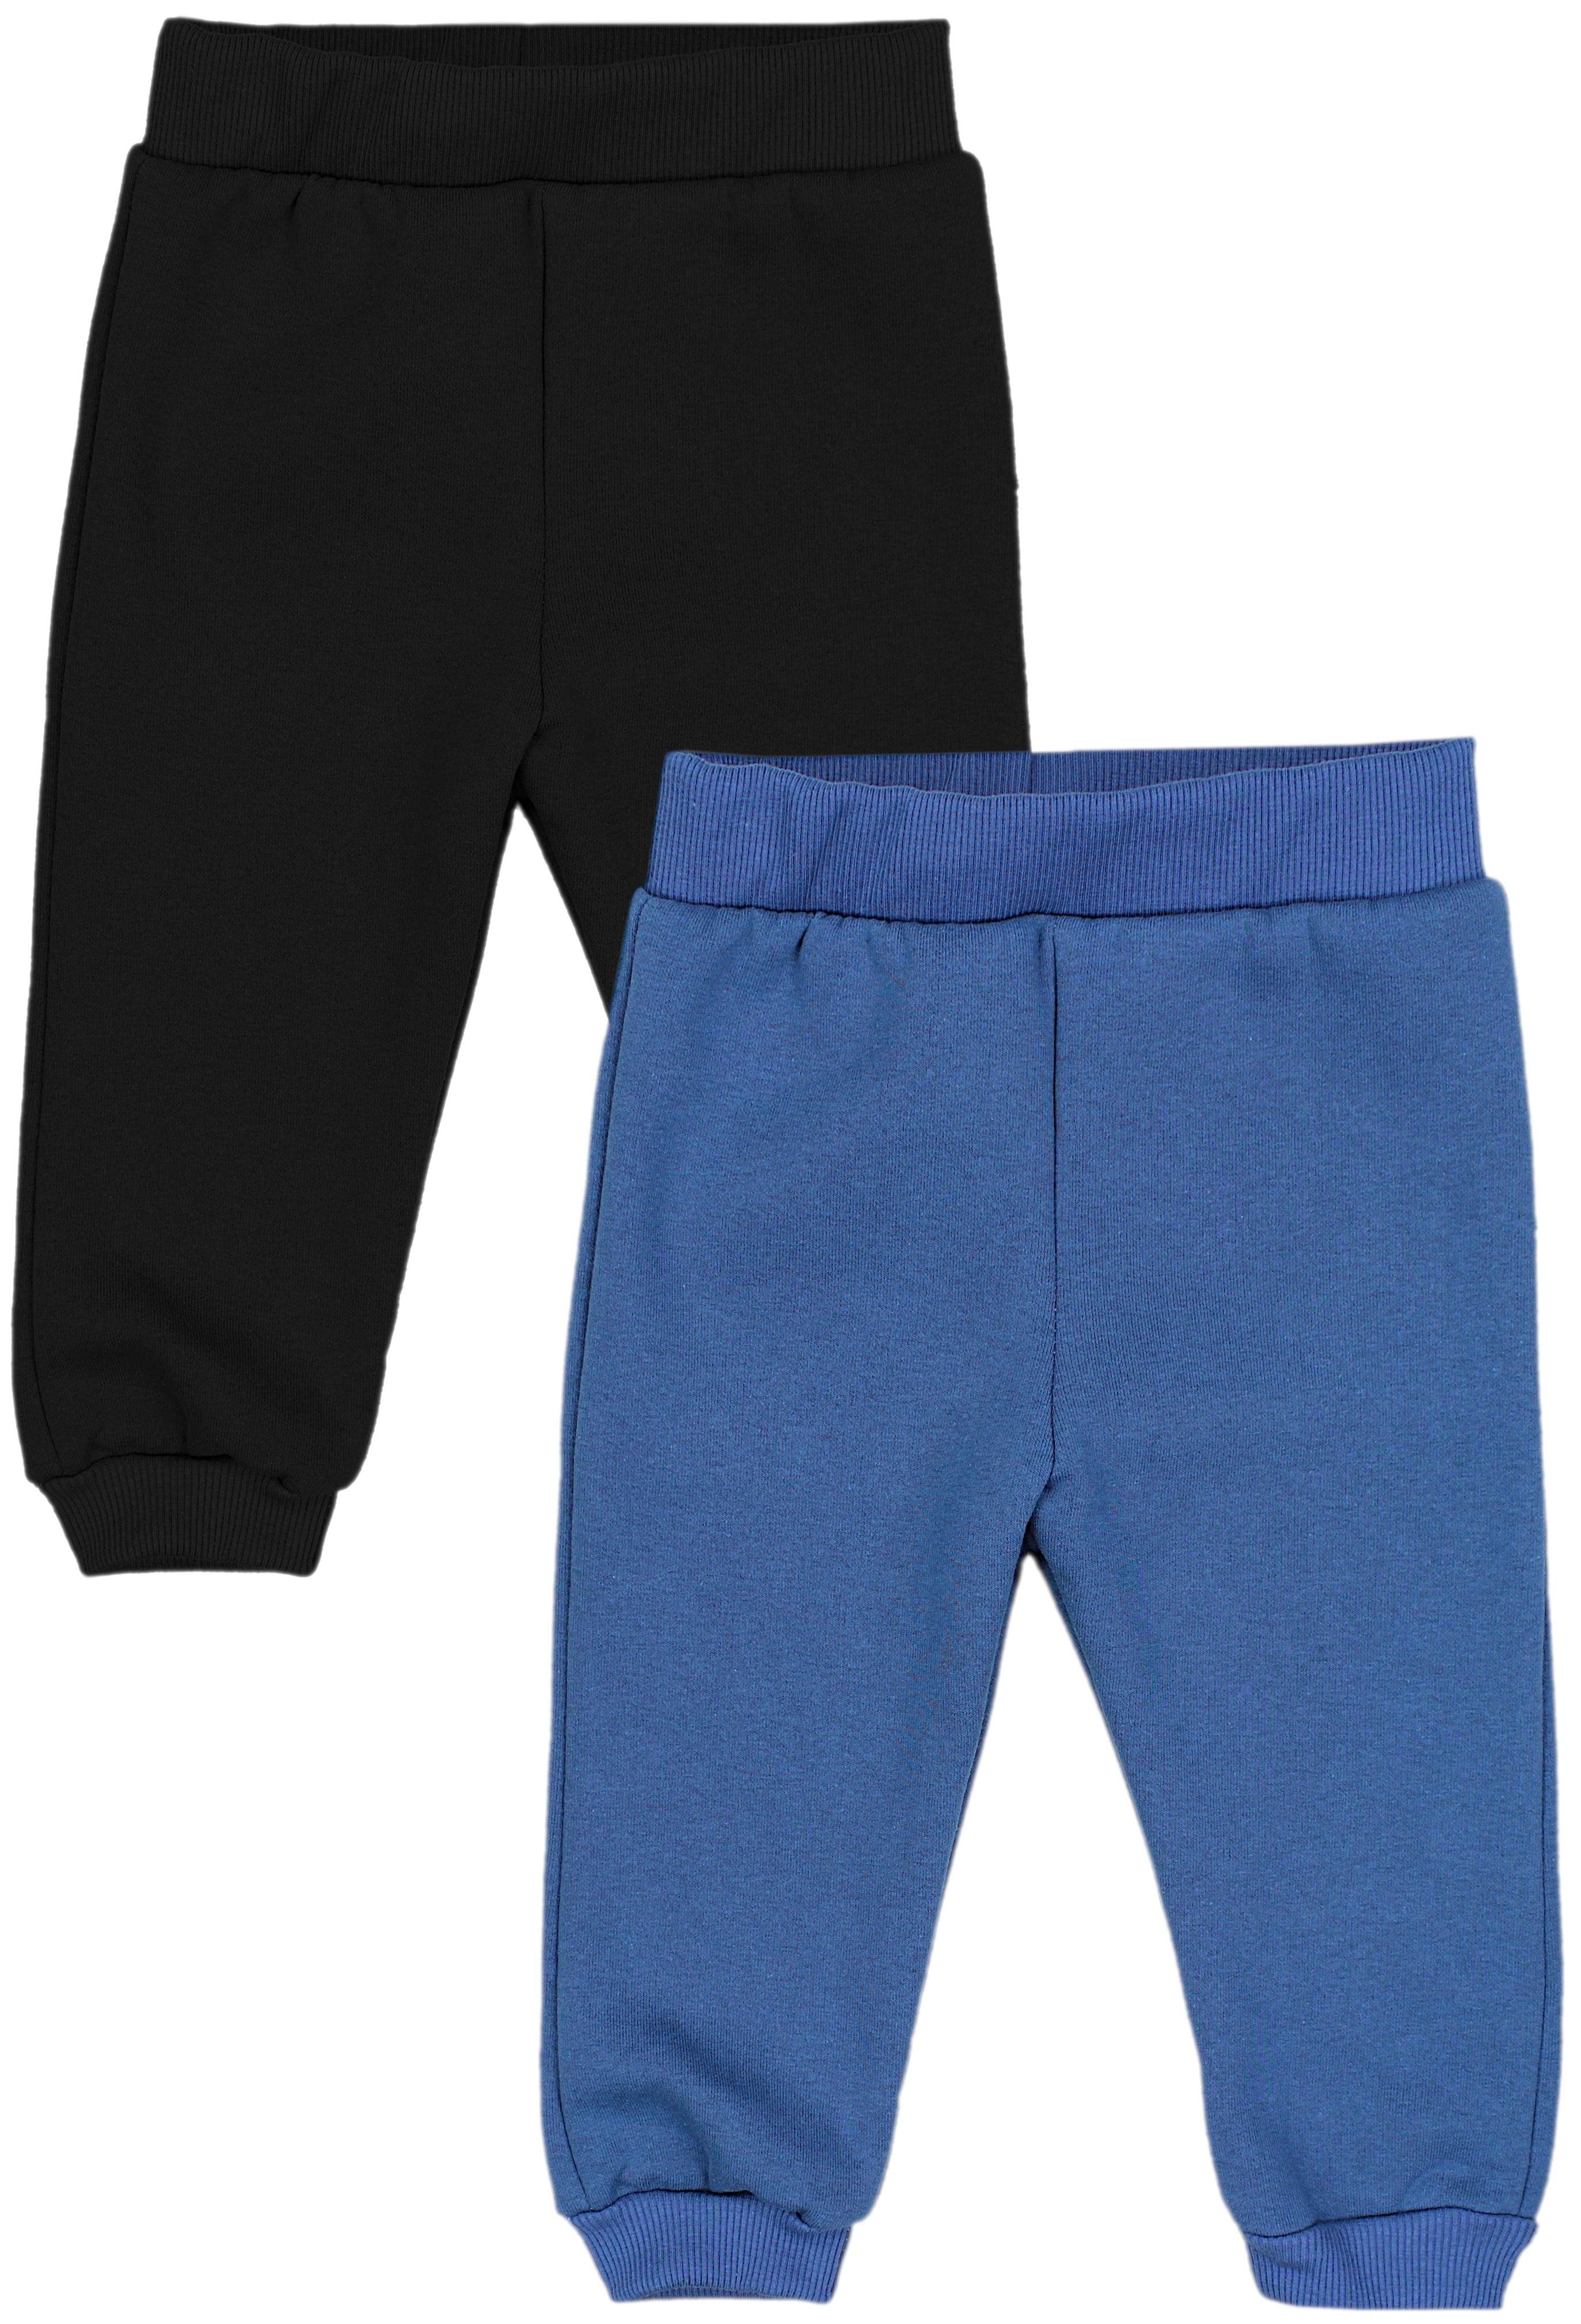 Hosen 2er Warm Winter TupTam Babyhose Schwarz Baby Fleecehose / Jeansblau Jungen Joggingshose Pack